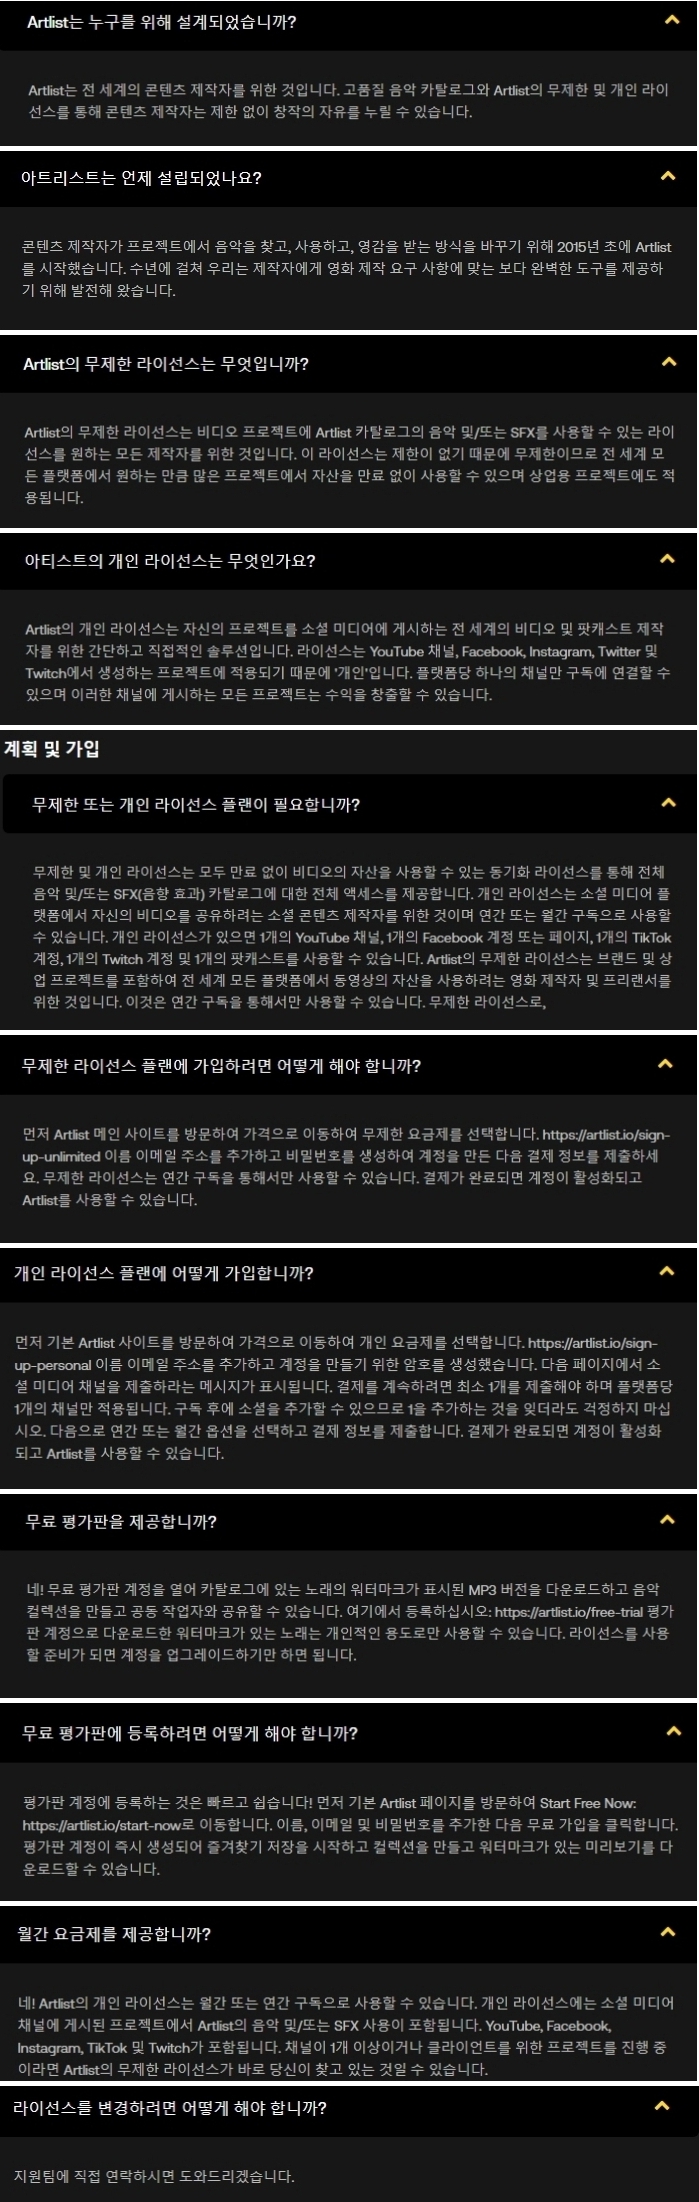 아트리스트 Q&A, 유튜브 브금, 영상편집 음향효과 사이트